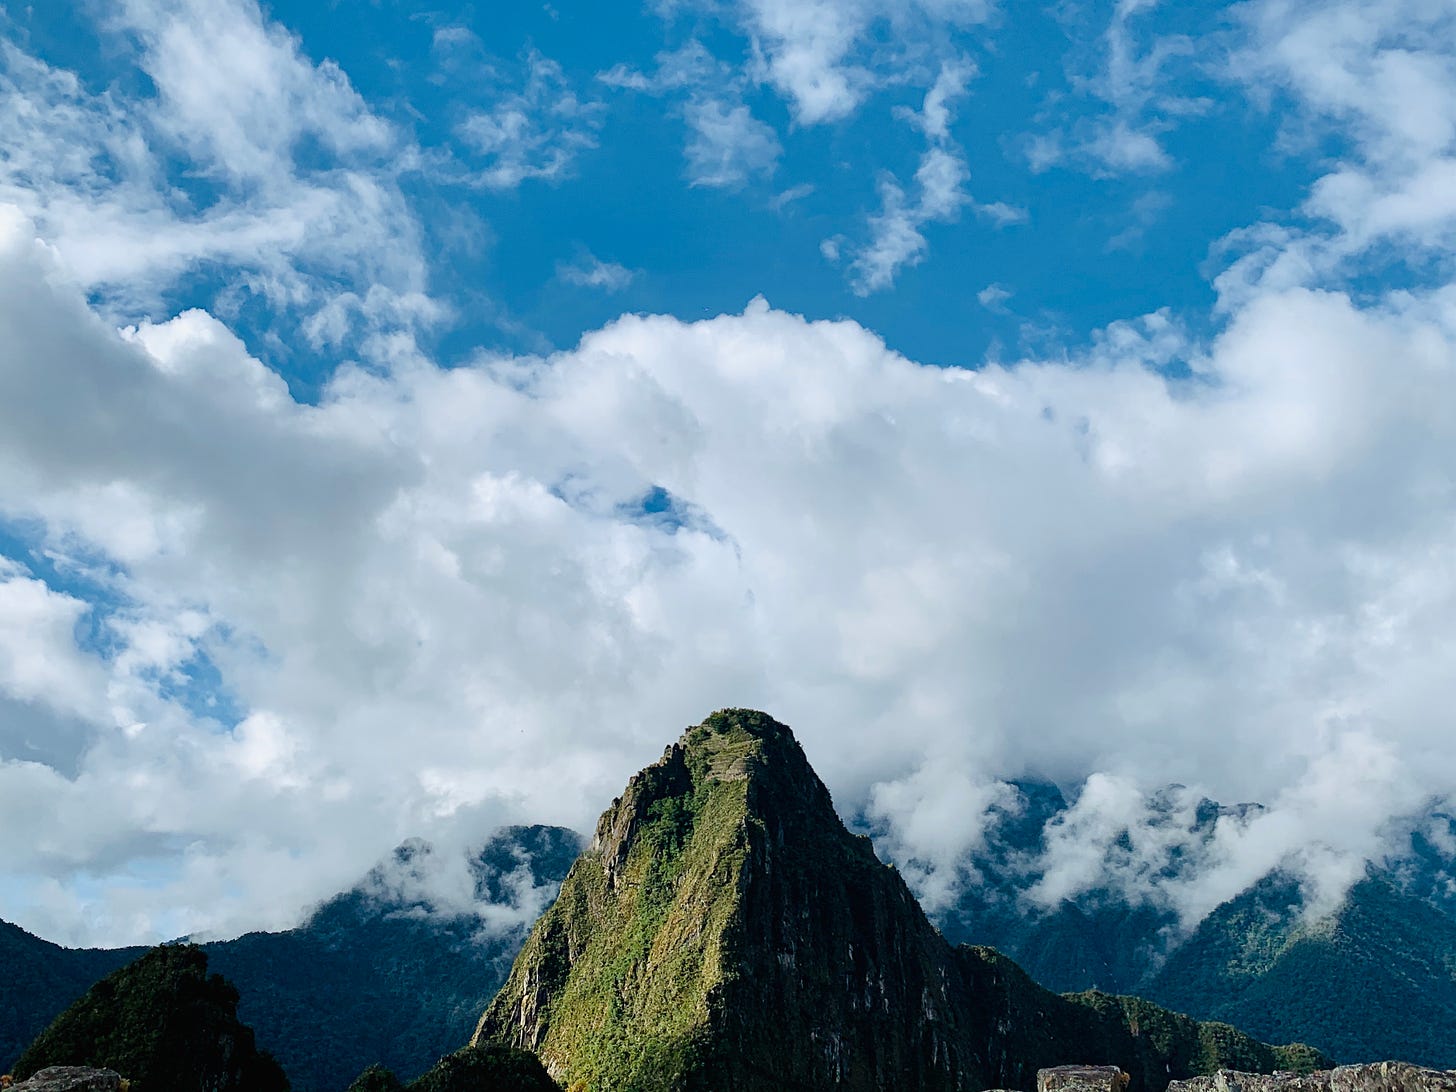 Nose tip of the famous Machu Picchu face in Peru